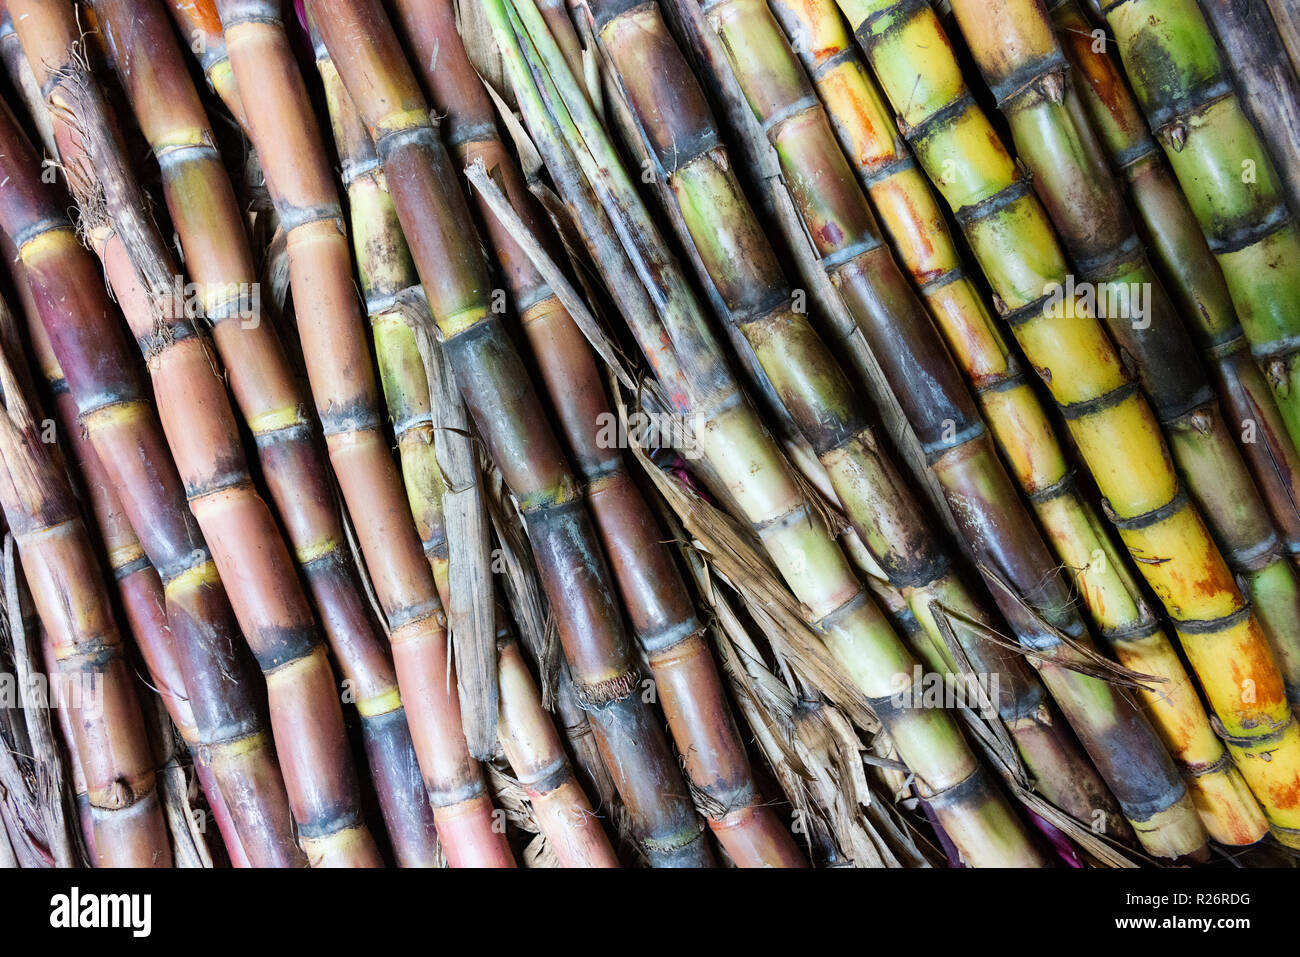 Landwirtschaftliche Praktiken und produzieren, sind auch auf der Goroka Festival, ein Tribal Gathering. Dies ist Zuckerrohr. Stockfoto